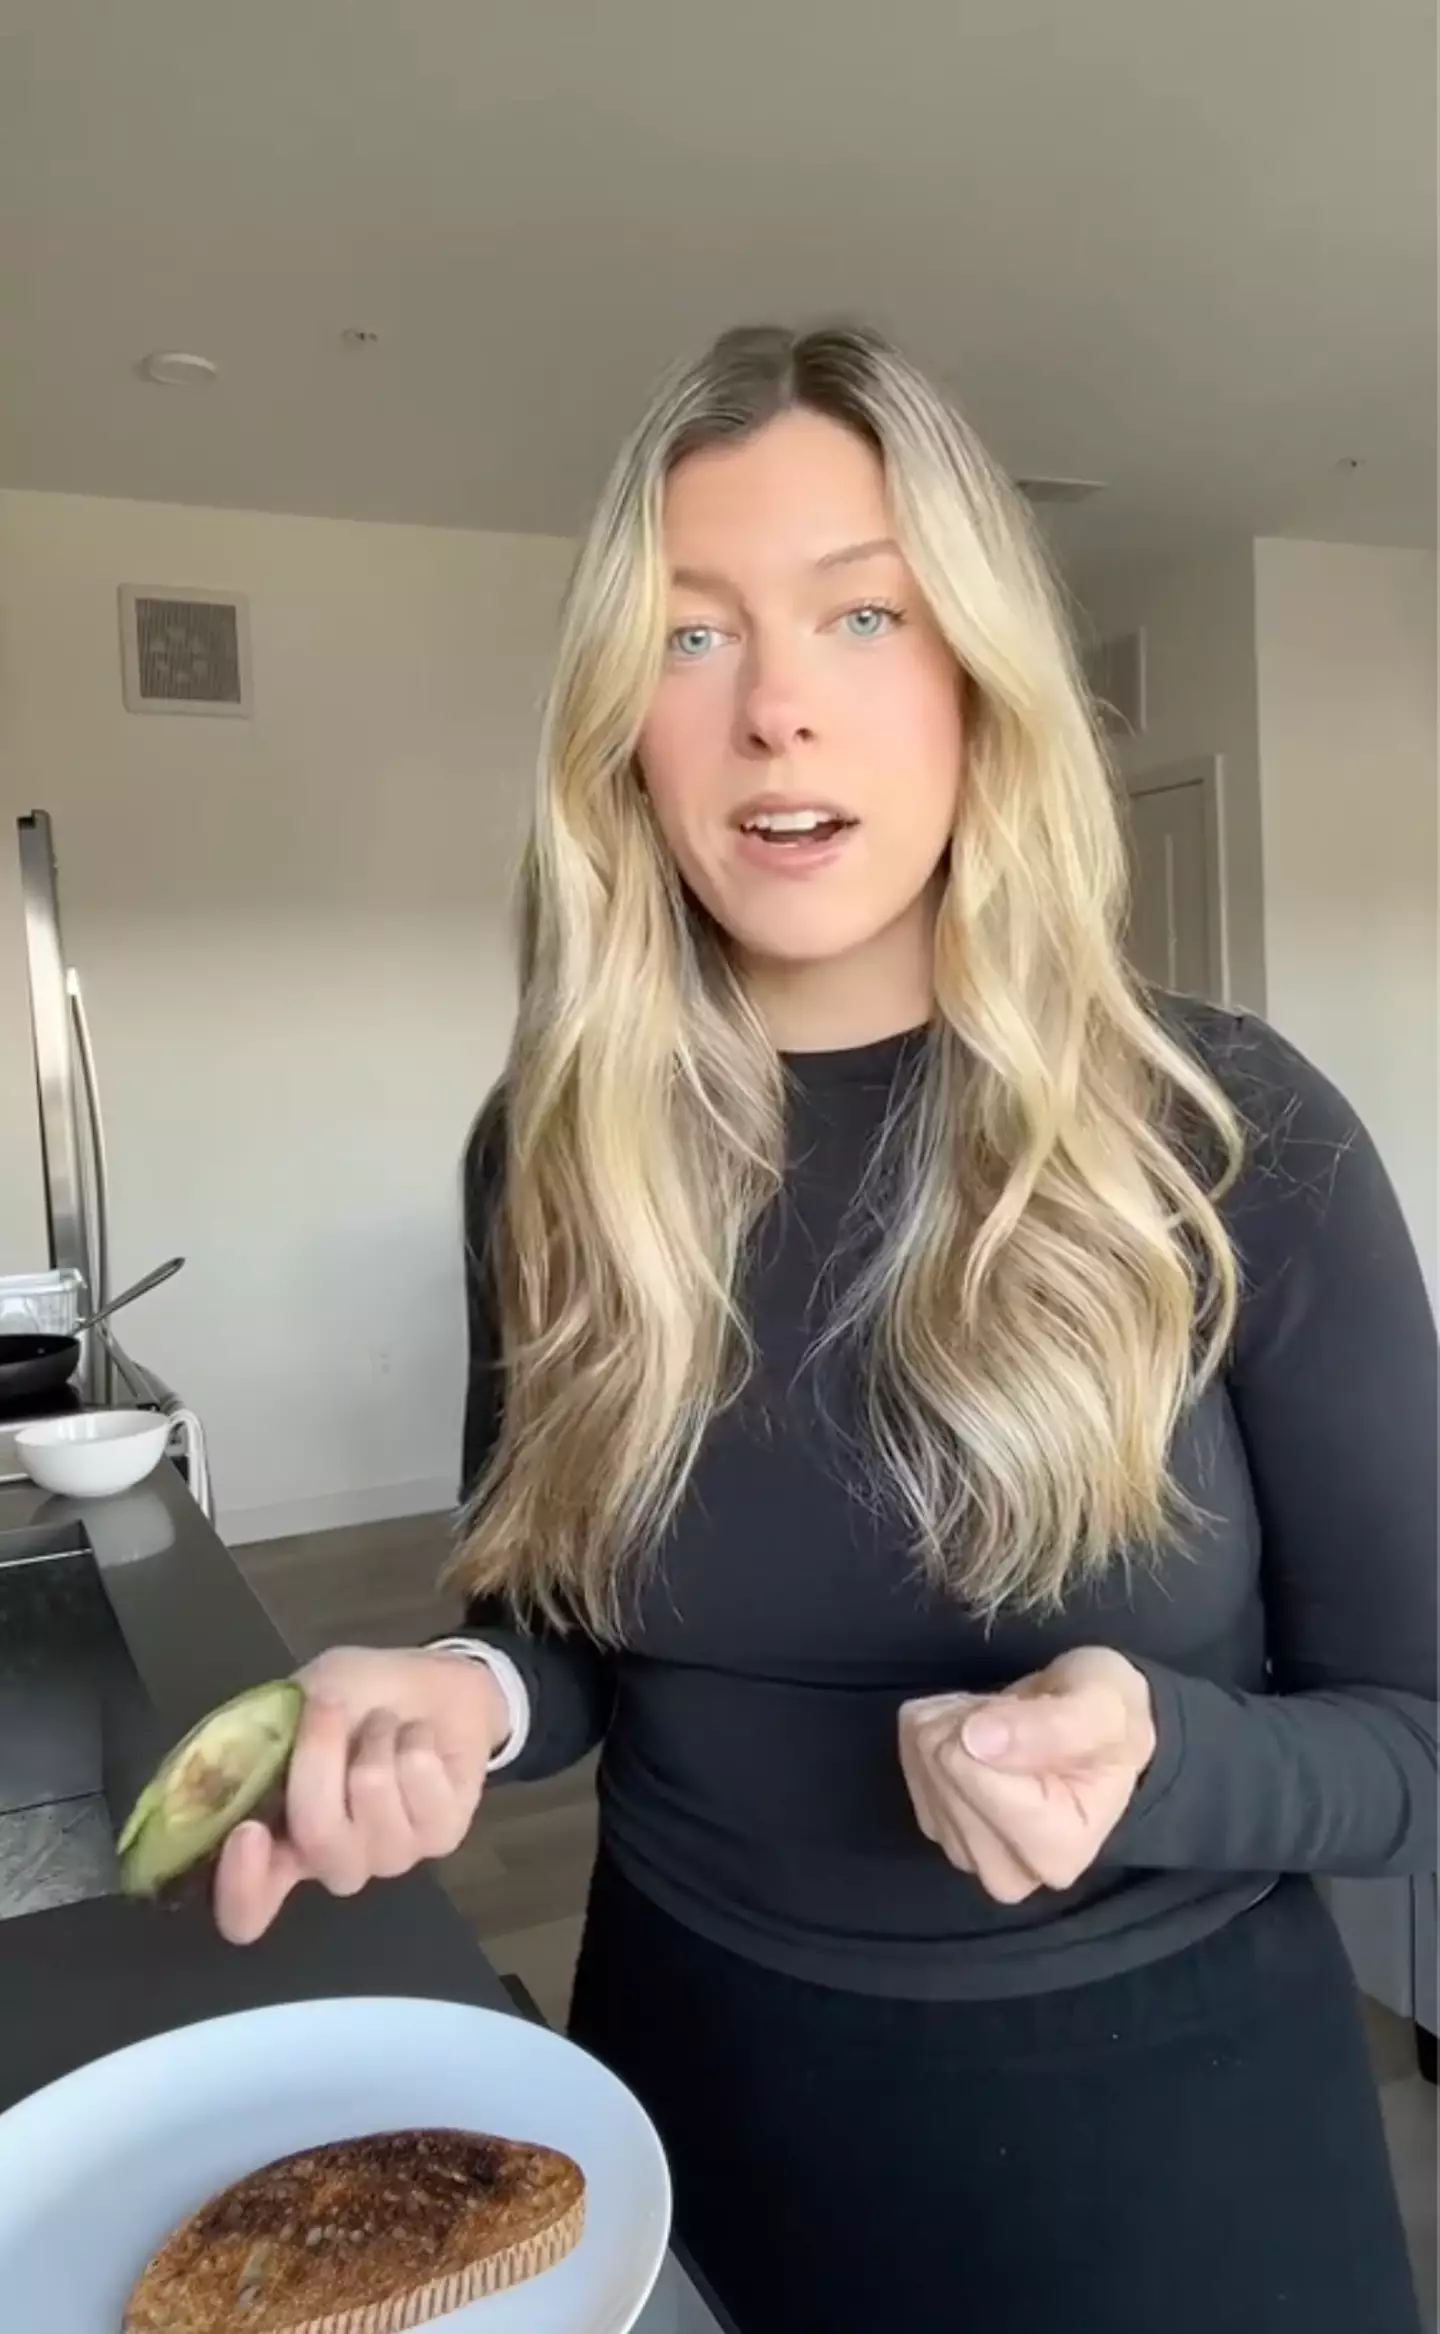 The TikToker explained her predicament over avocado toast.